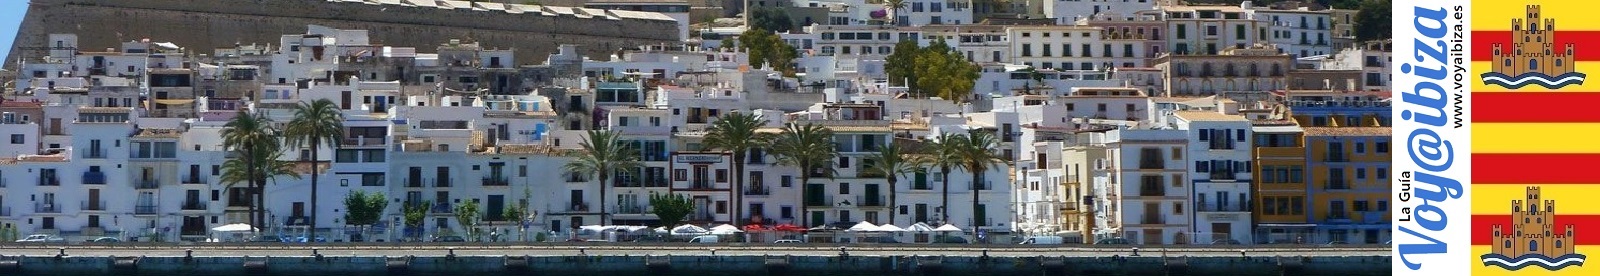 Arquitectura de Ibiza - Eivissa